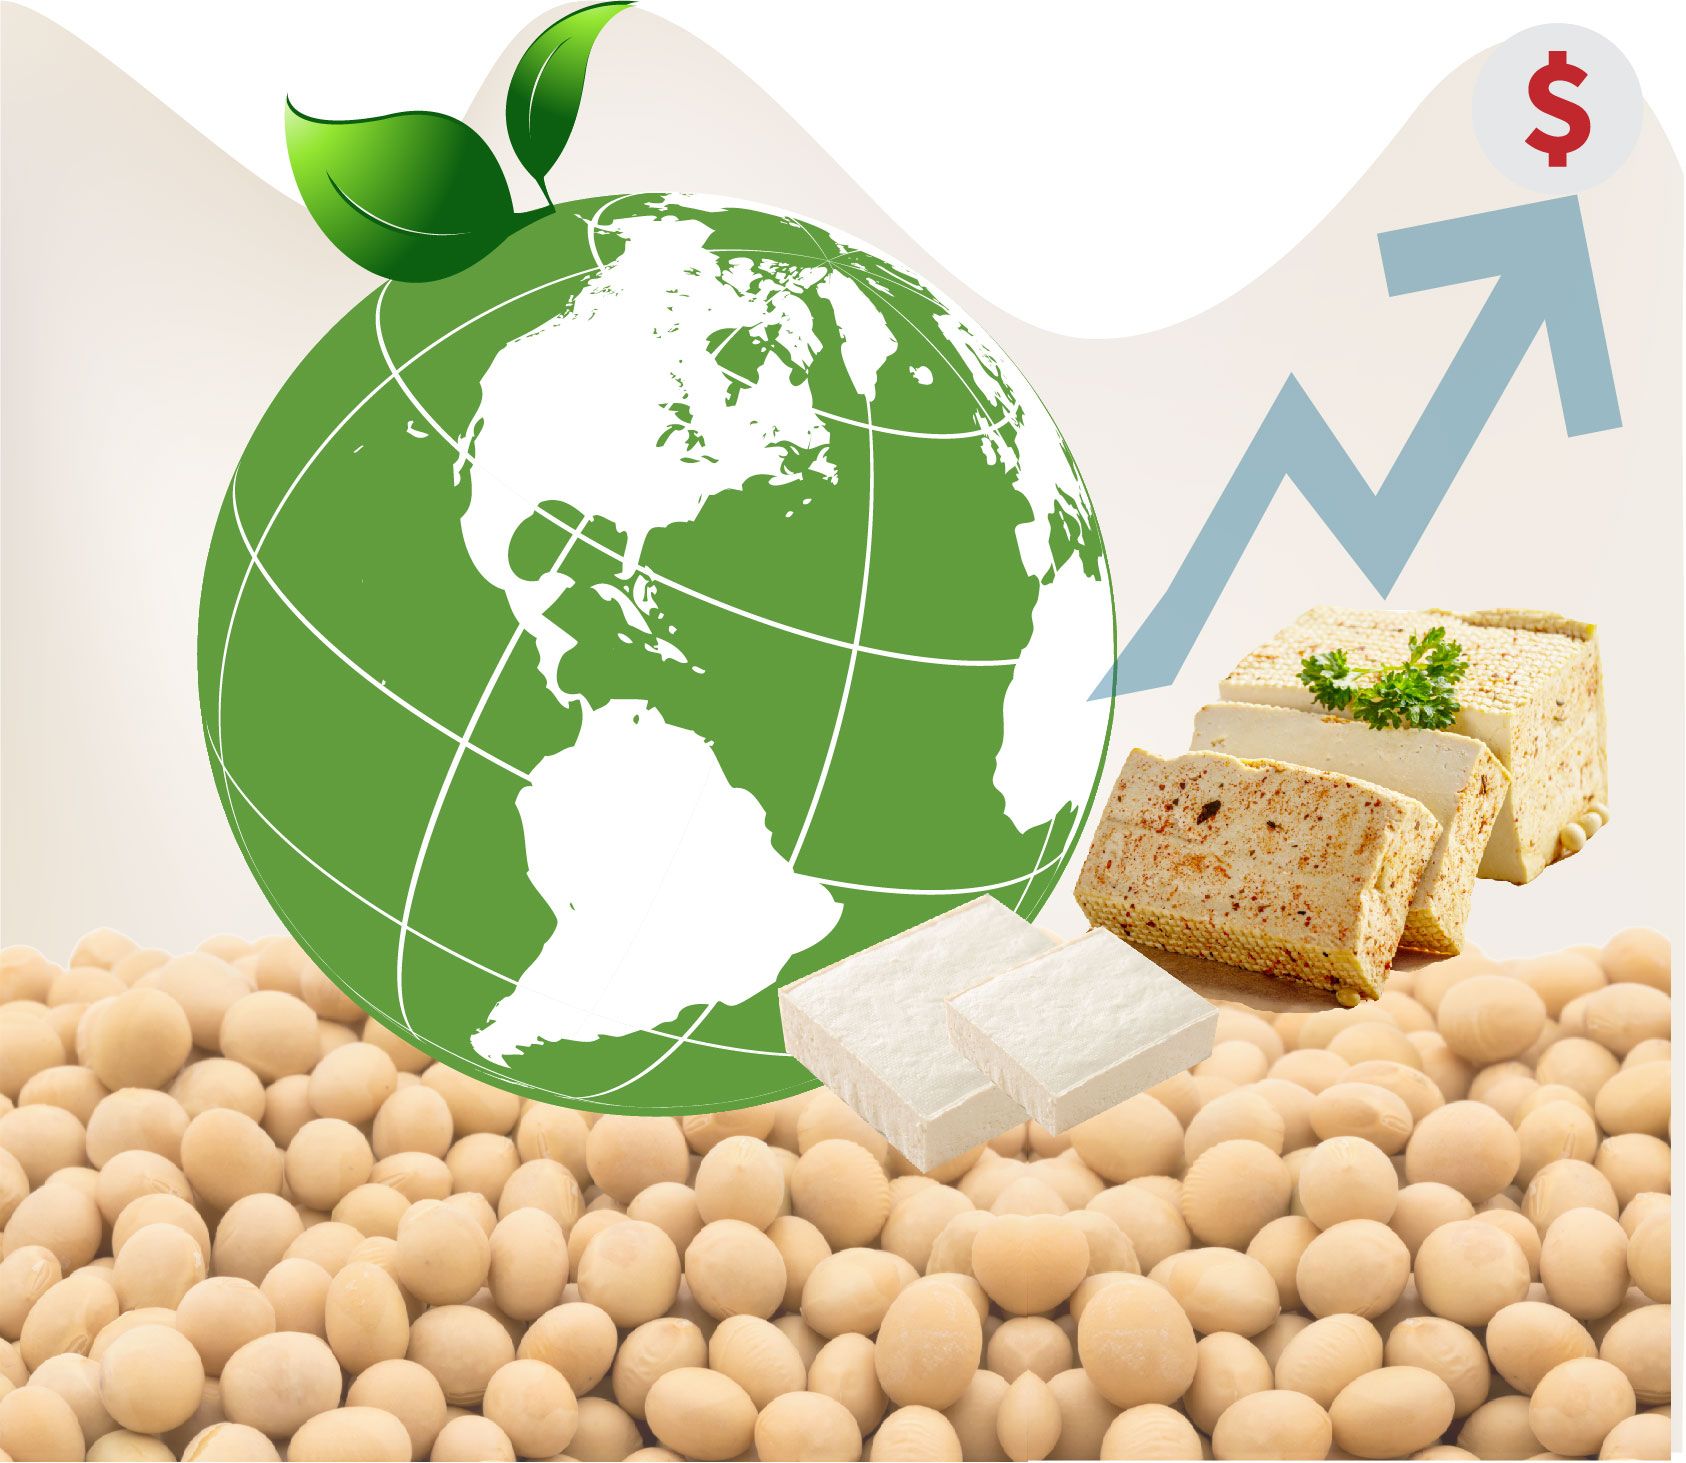 Tofu-marked, indtagelse af protein, tofu og sojamælkproduktion